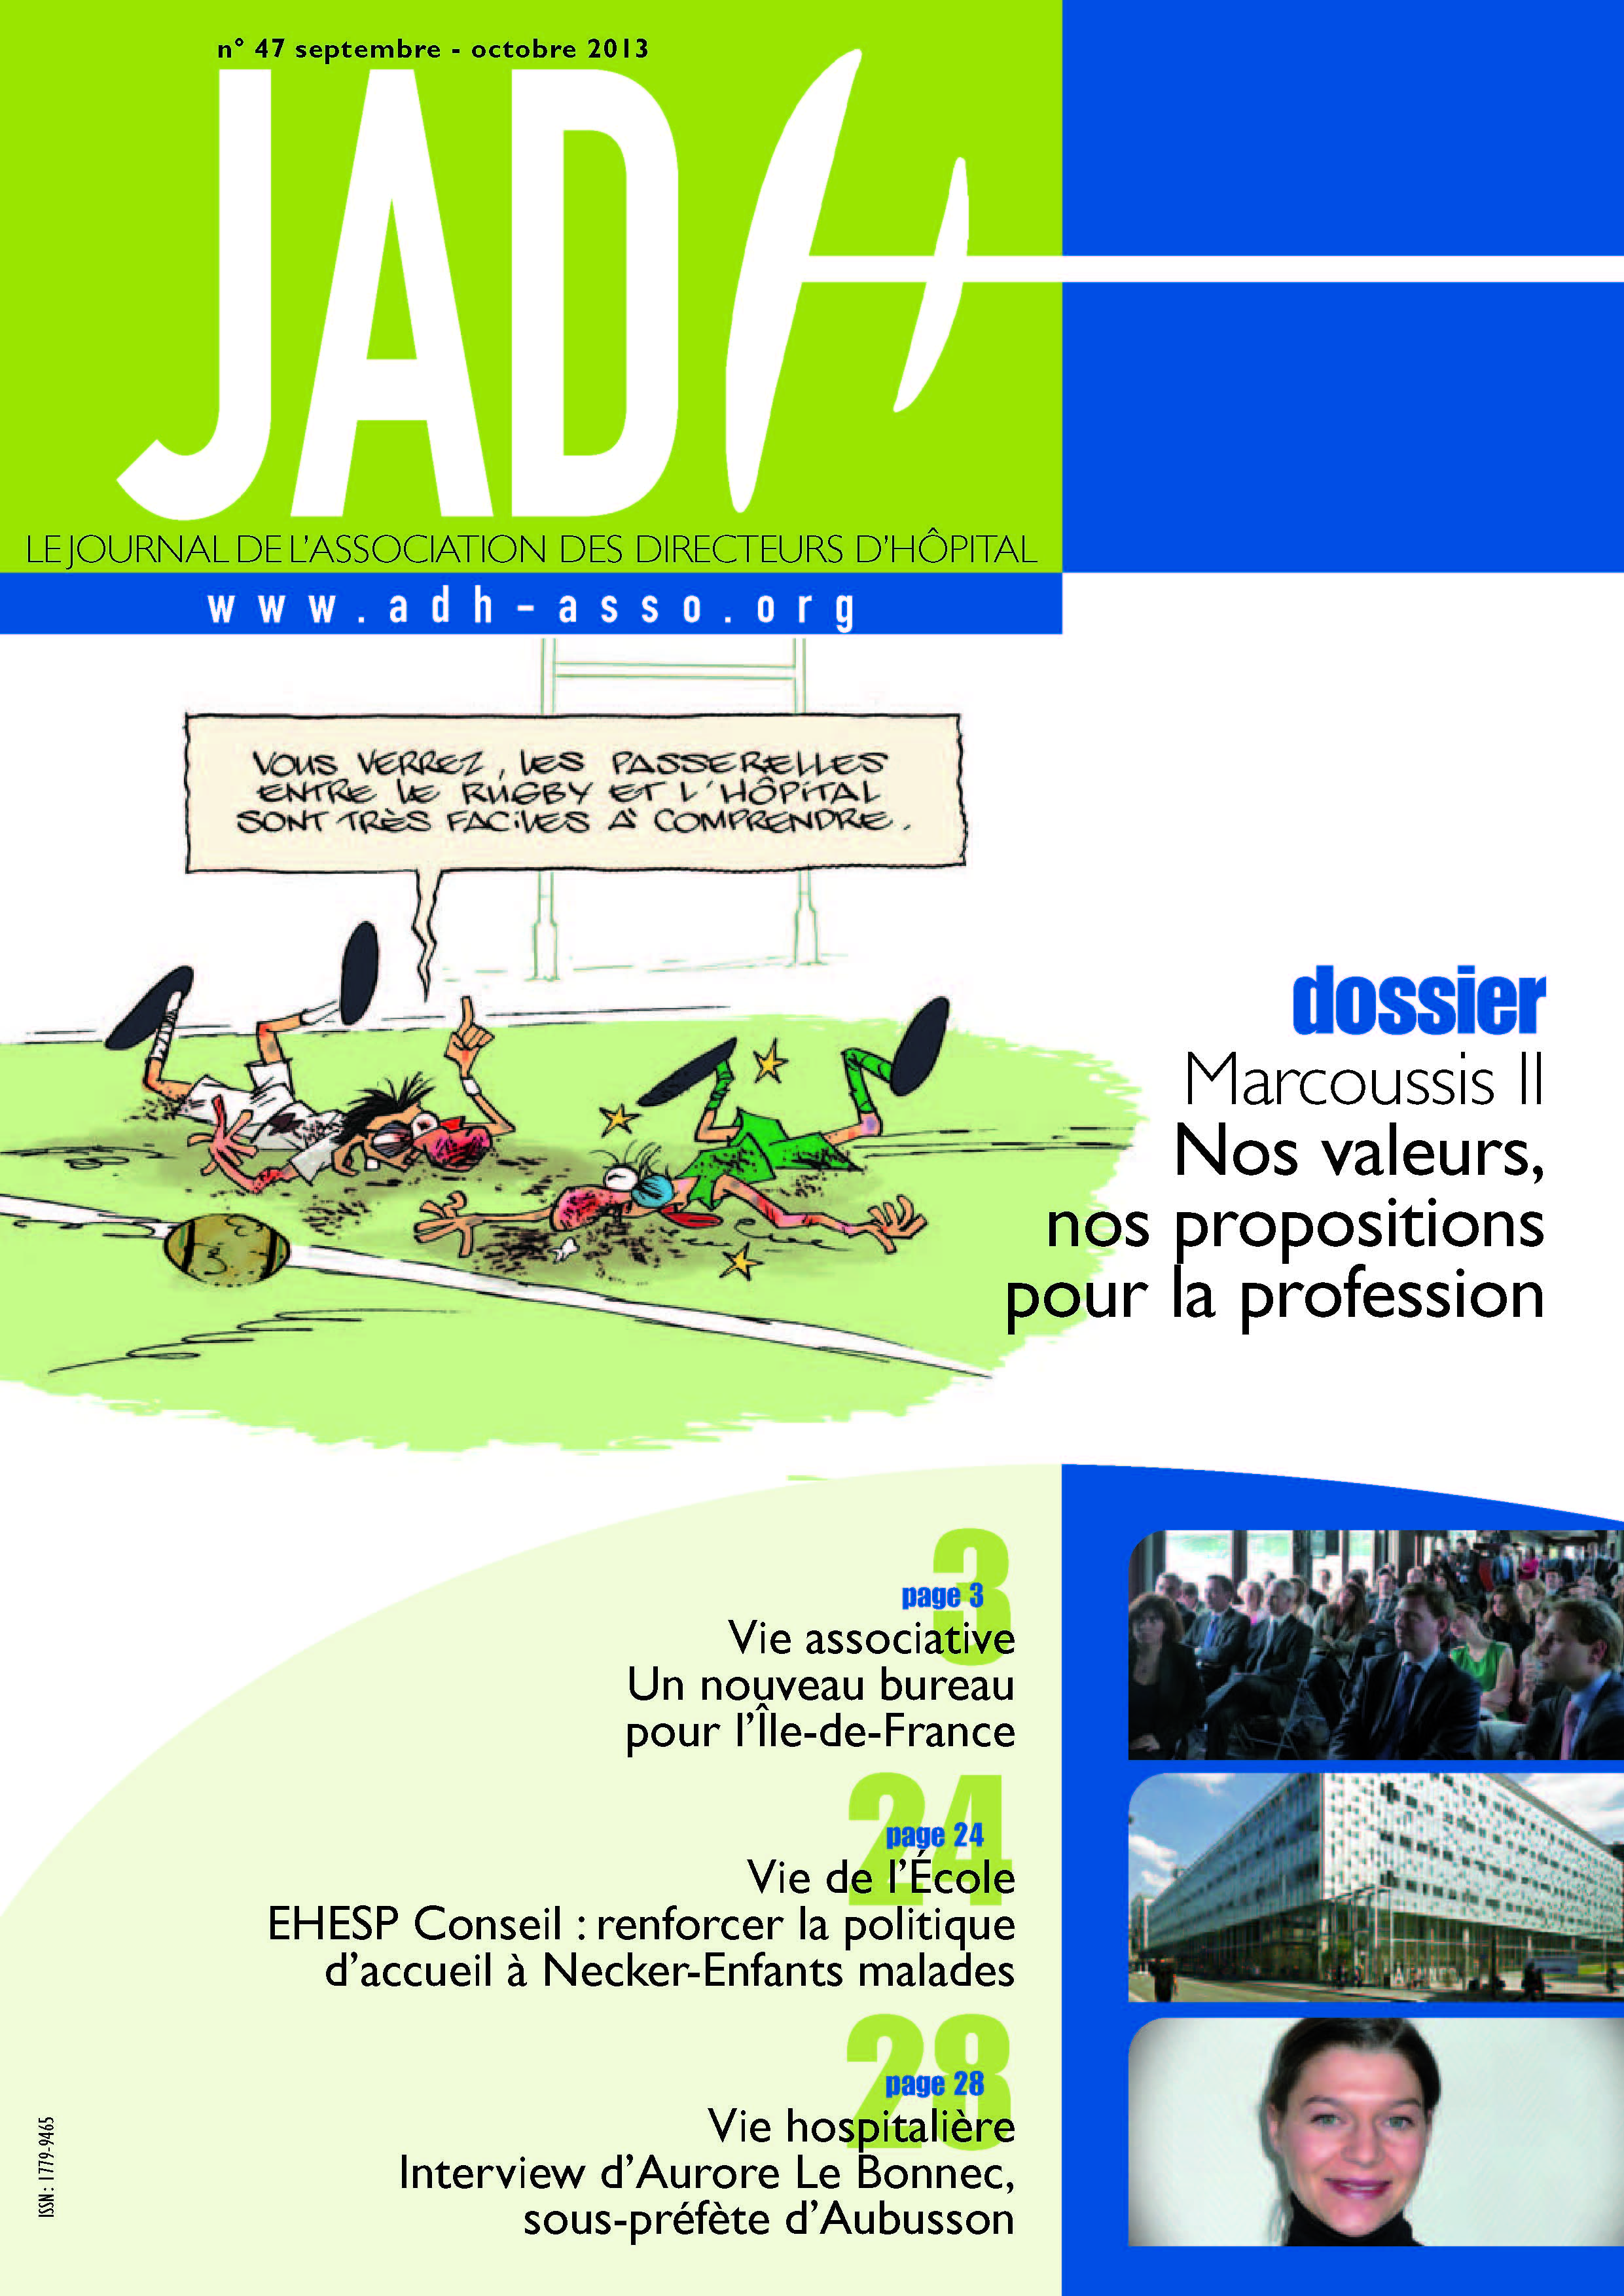 JADH 47 – septembre/octobre 2013